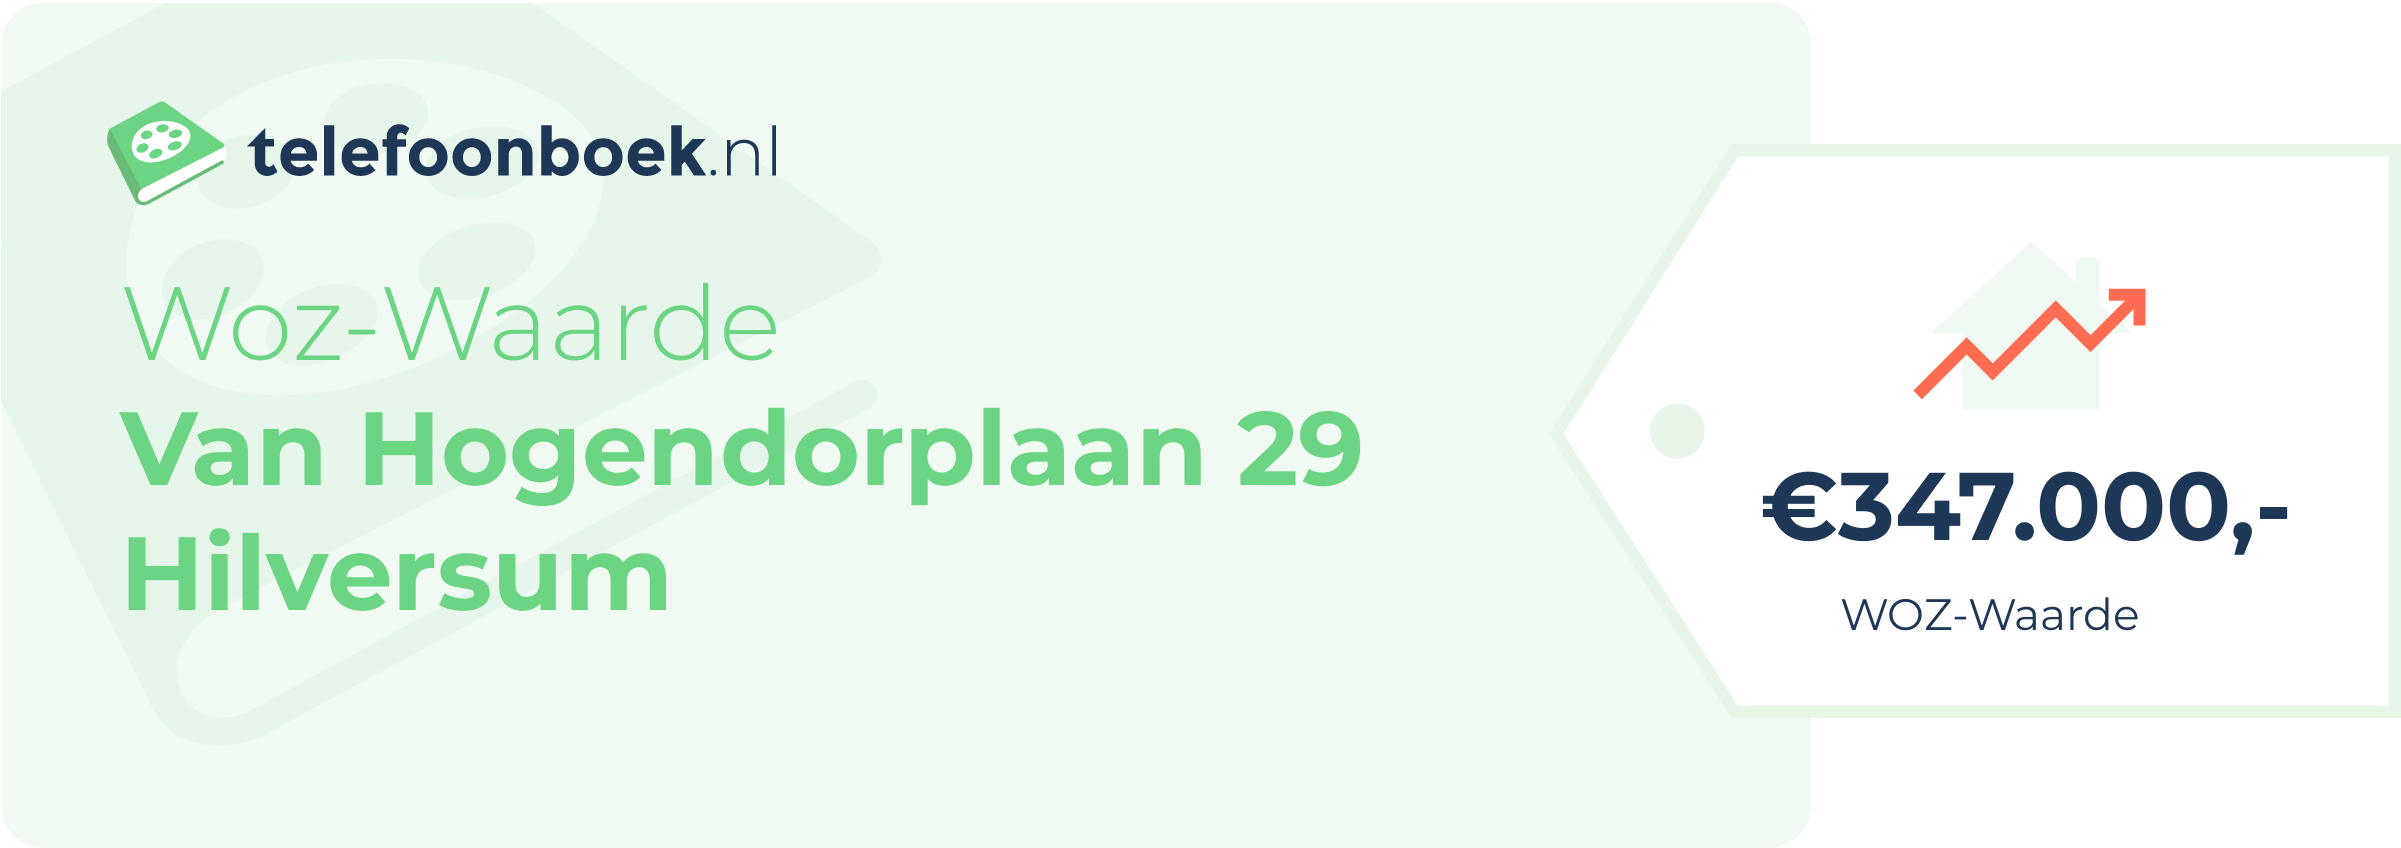 WOZ-waarde Van Hogendorplaan 29 Hilversum